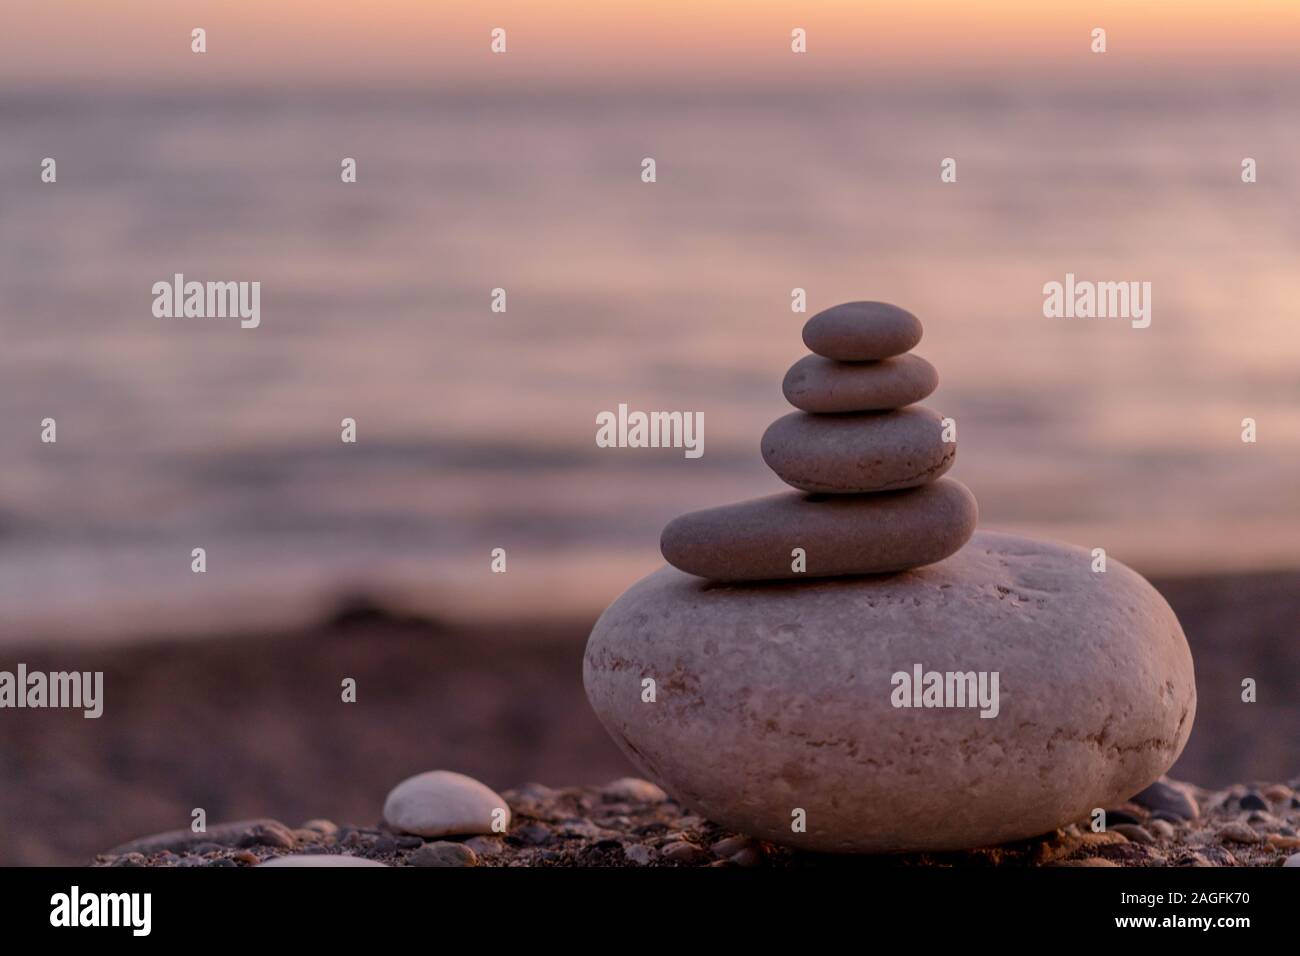 Perfekte Balance von Stapel von Pebbles am Meer in Richtung Sonnenuntergang. Konzept der Balance, Harmonie und Meditation. Helfende oder unterstützende jemand für wachsende oder höher. Stockfoto